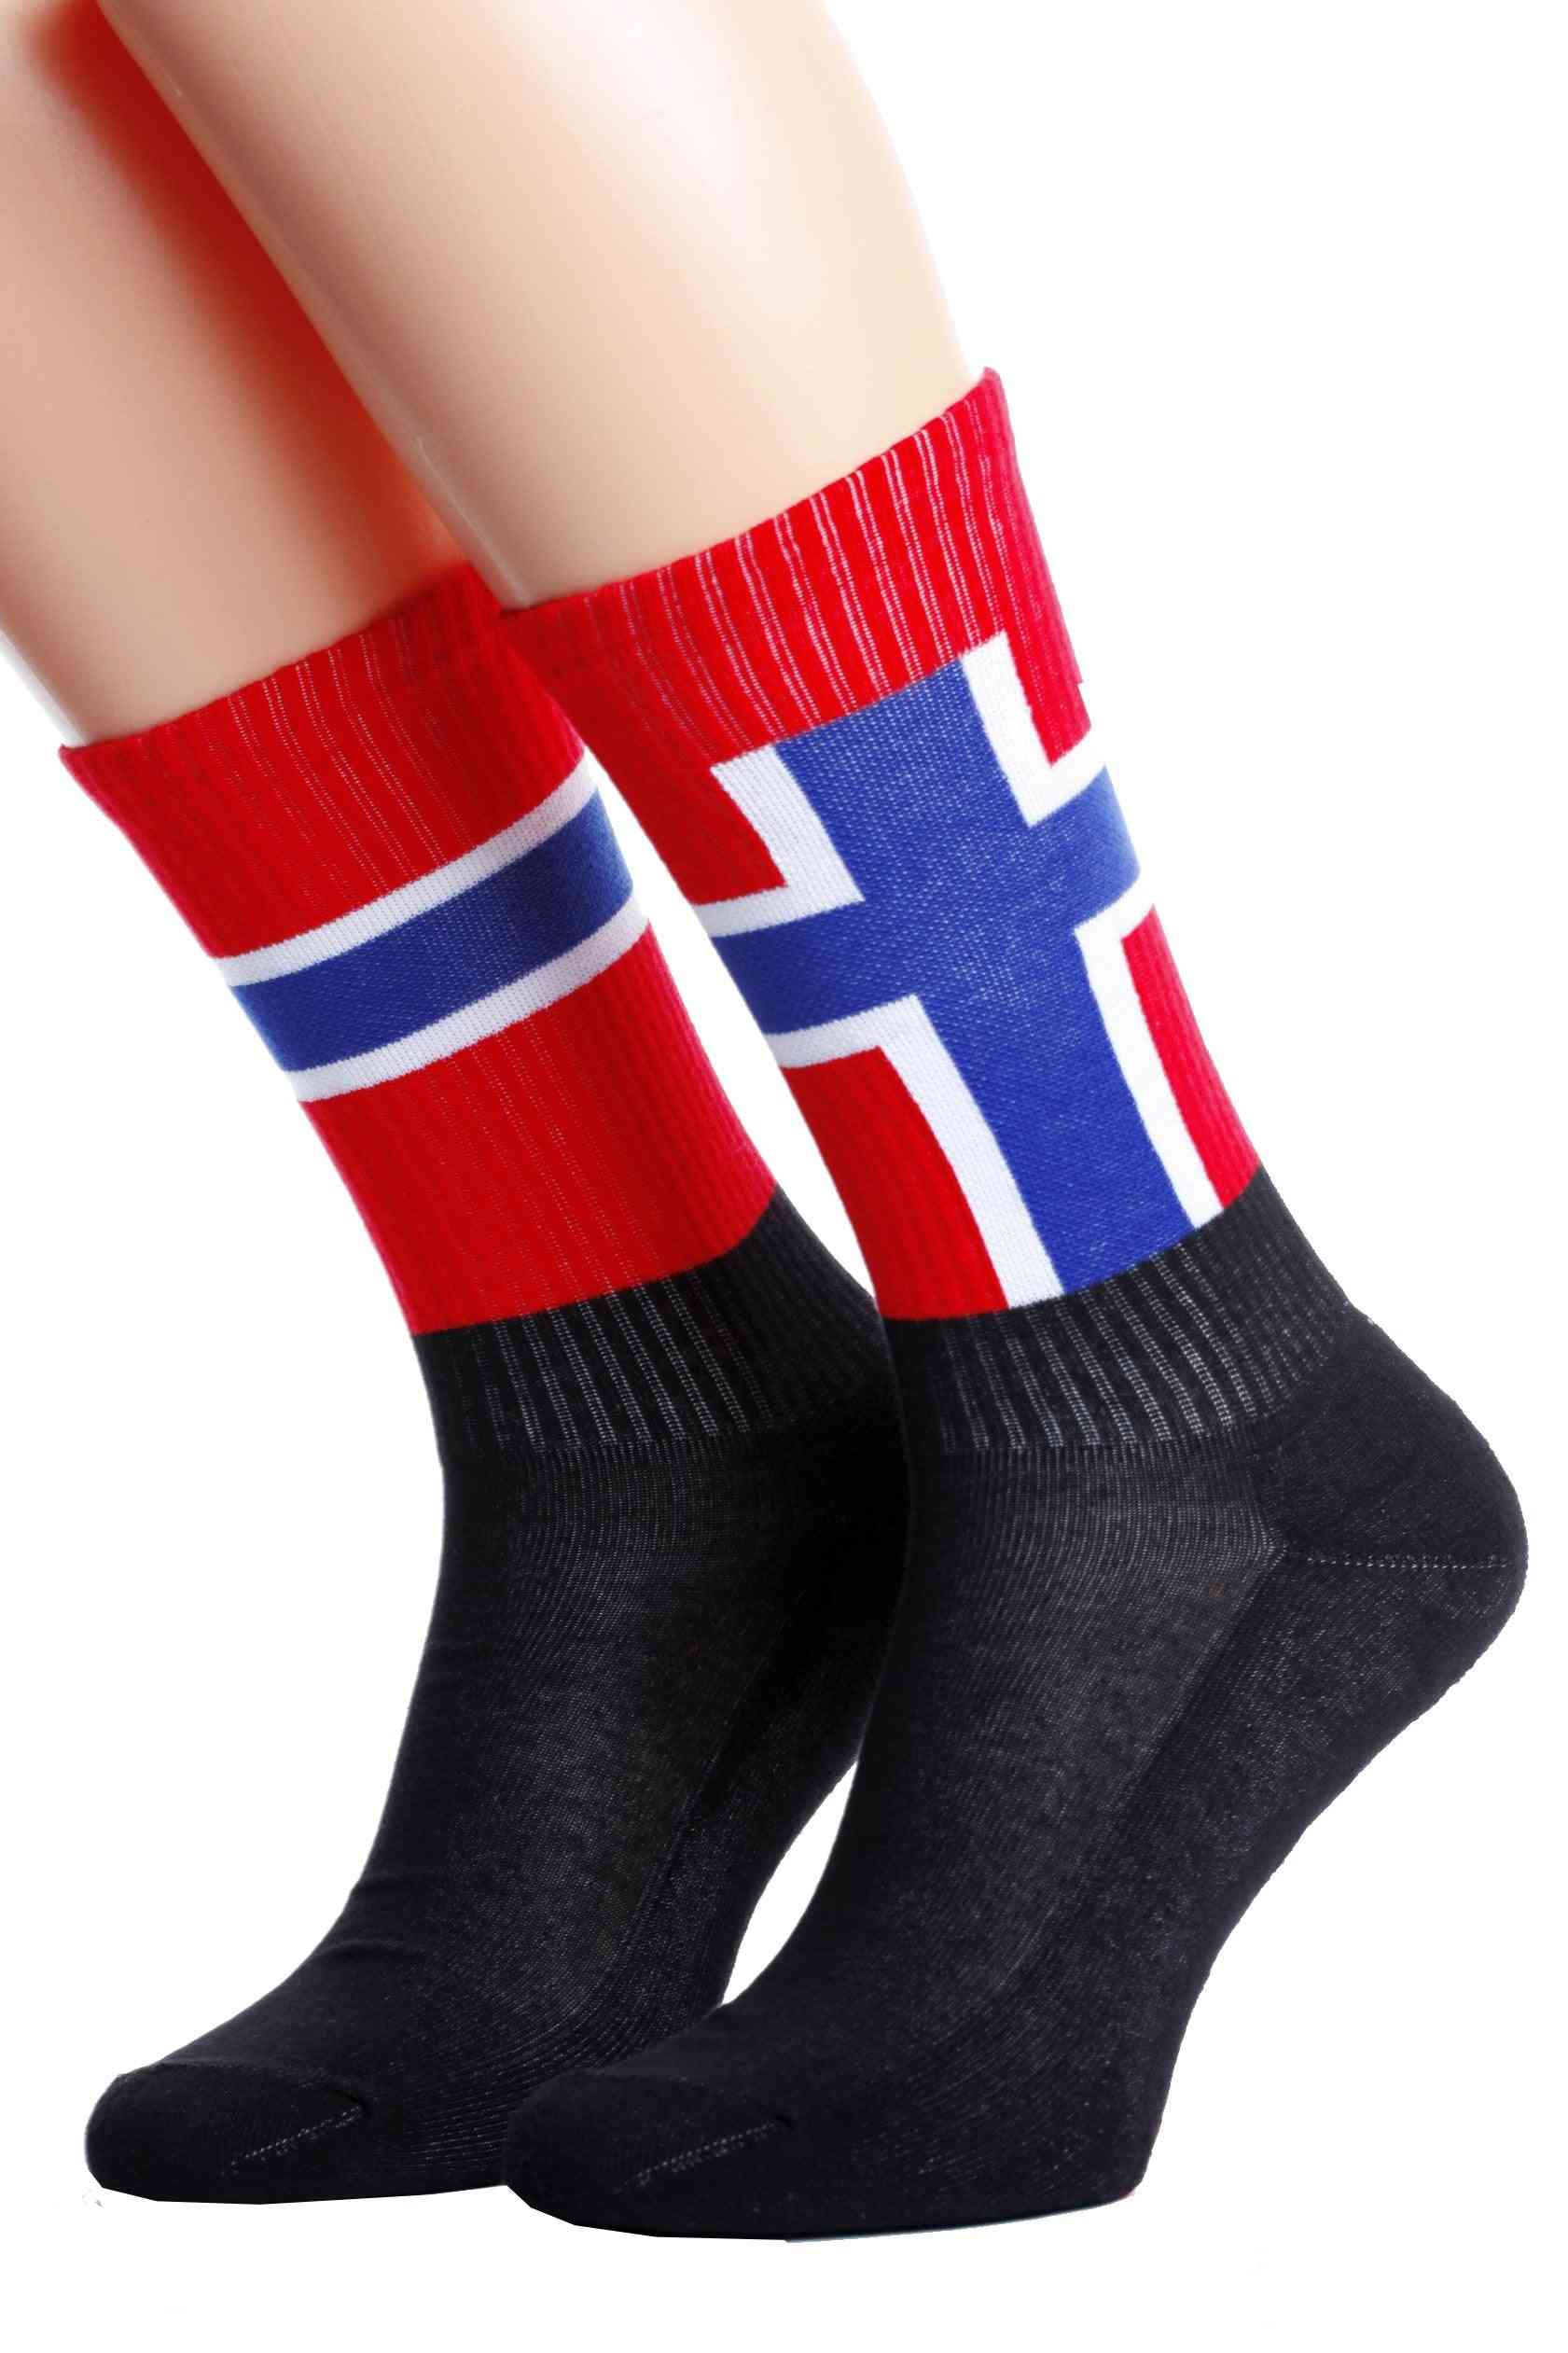 Flag Printed Socks For Men And Women